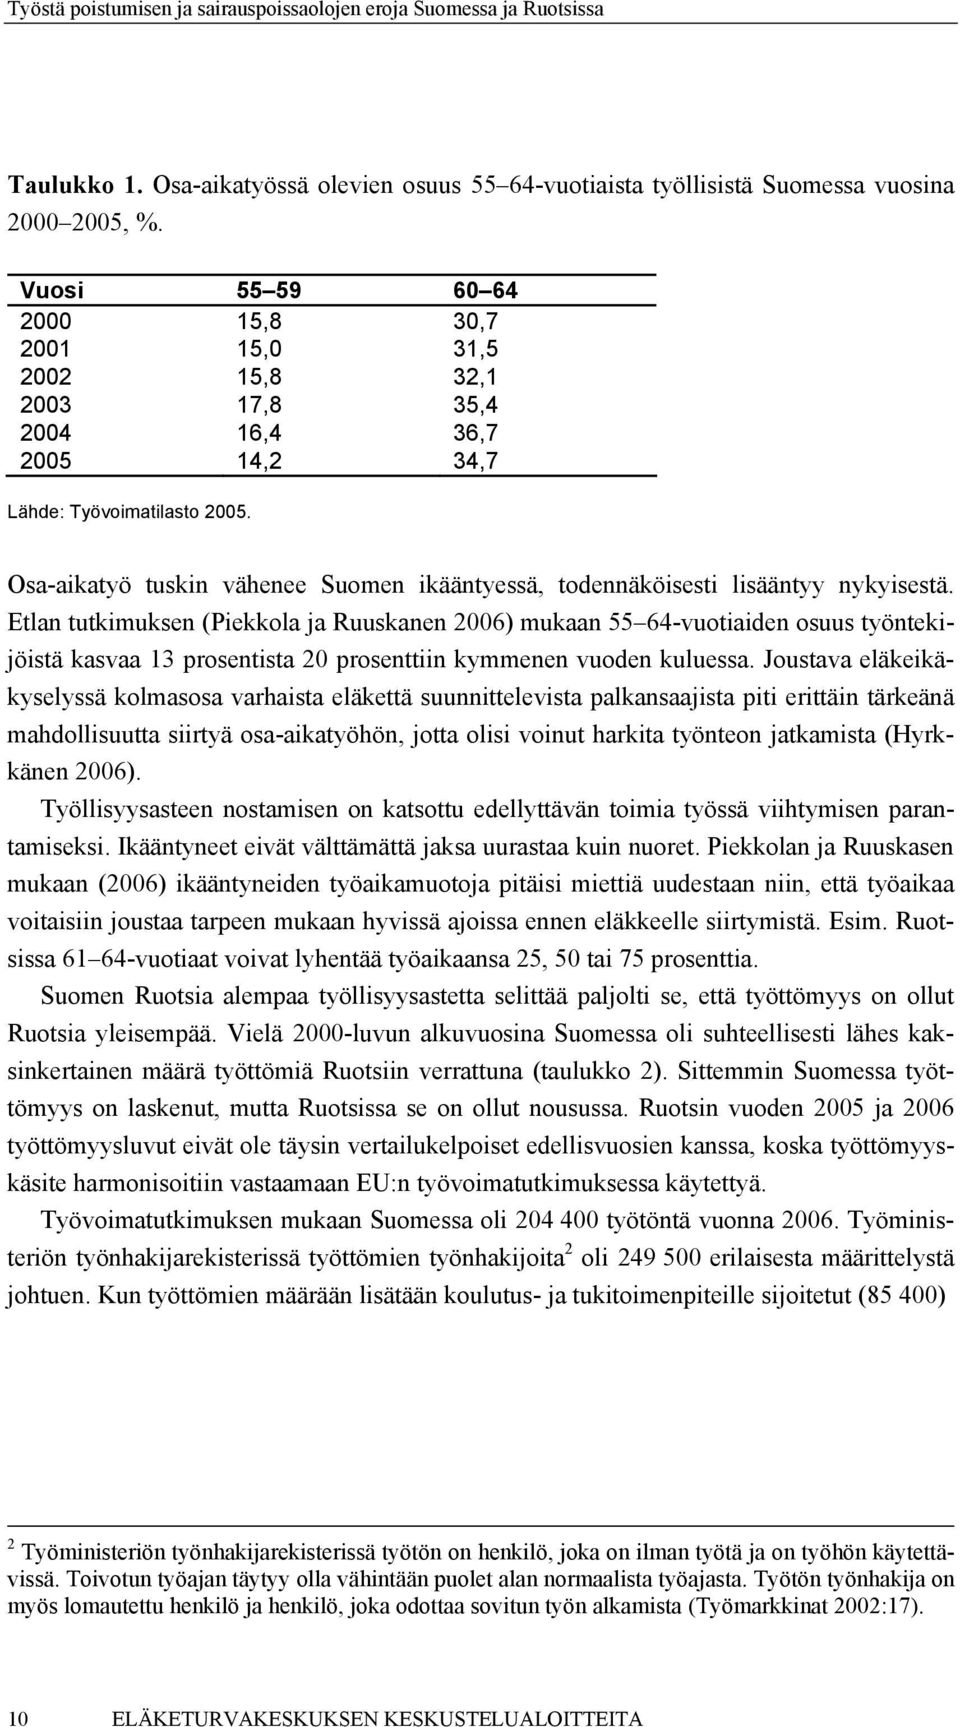 Osa-aikatyö tuskin vähenee Suomen ikääntyessä, todennäköisesti lisääntyy nykyisestä.